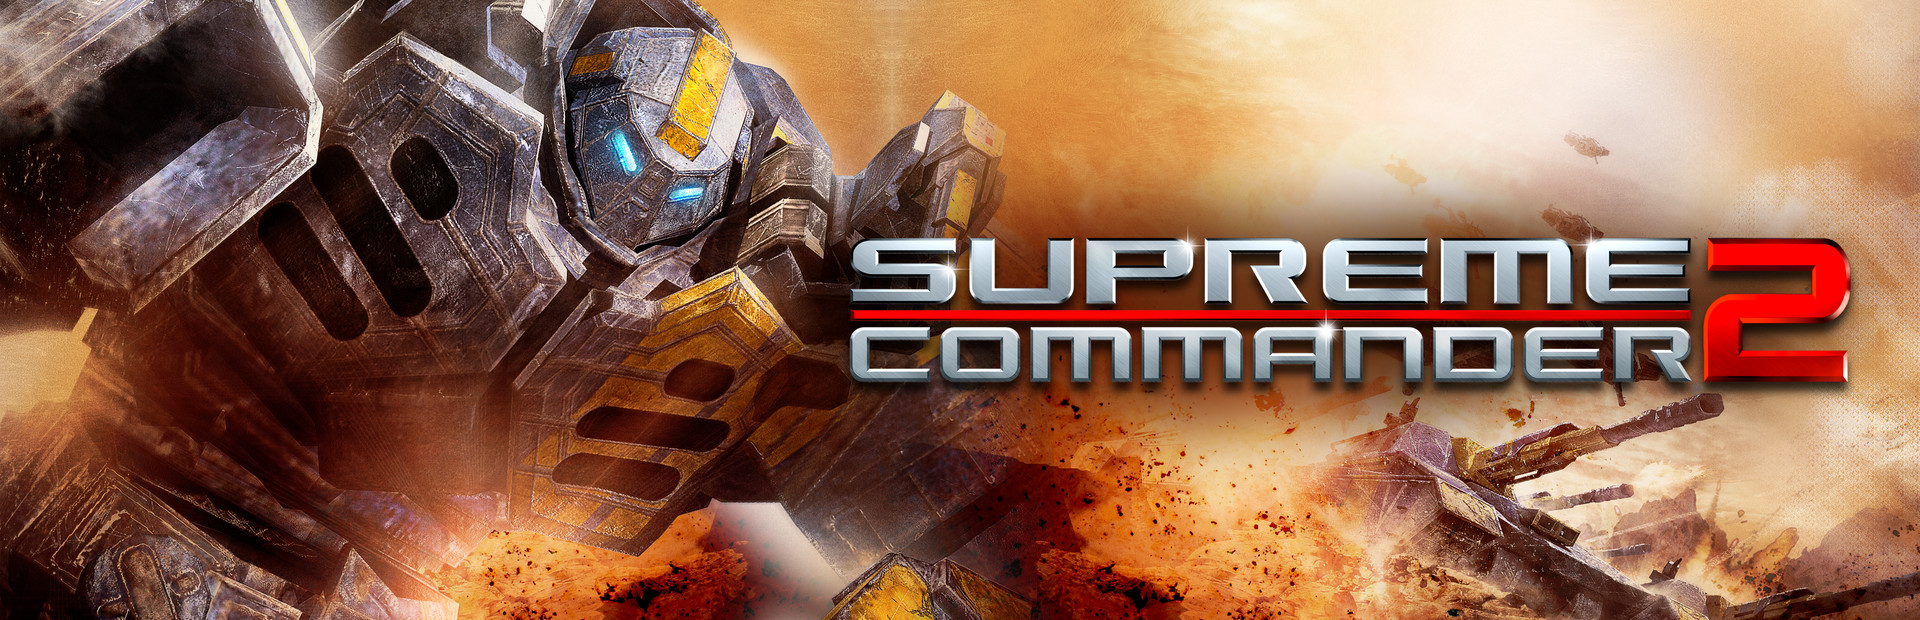 Supreme Commander 2 cover image